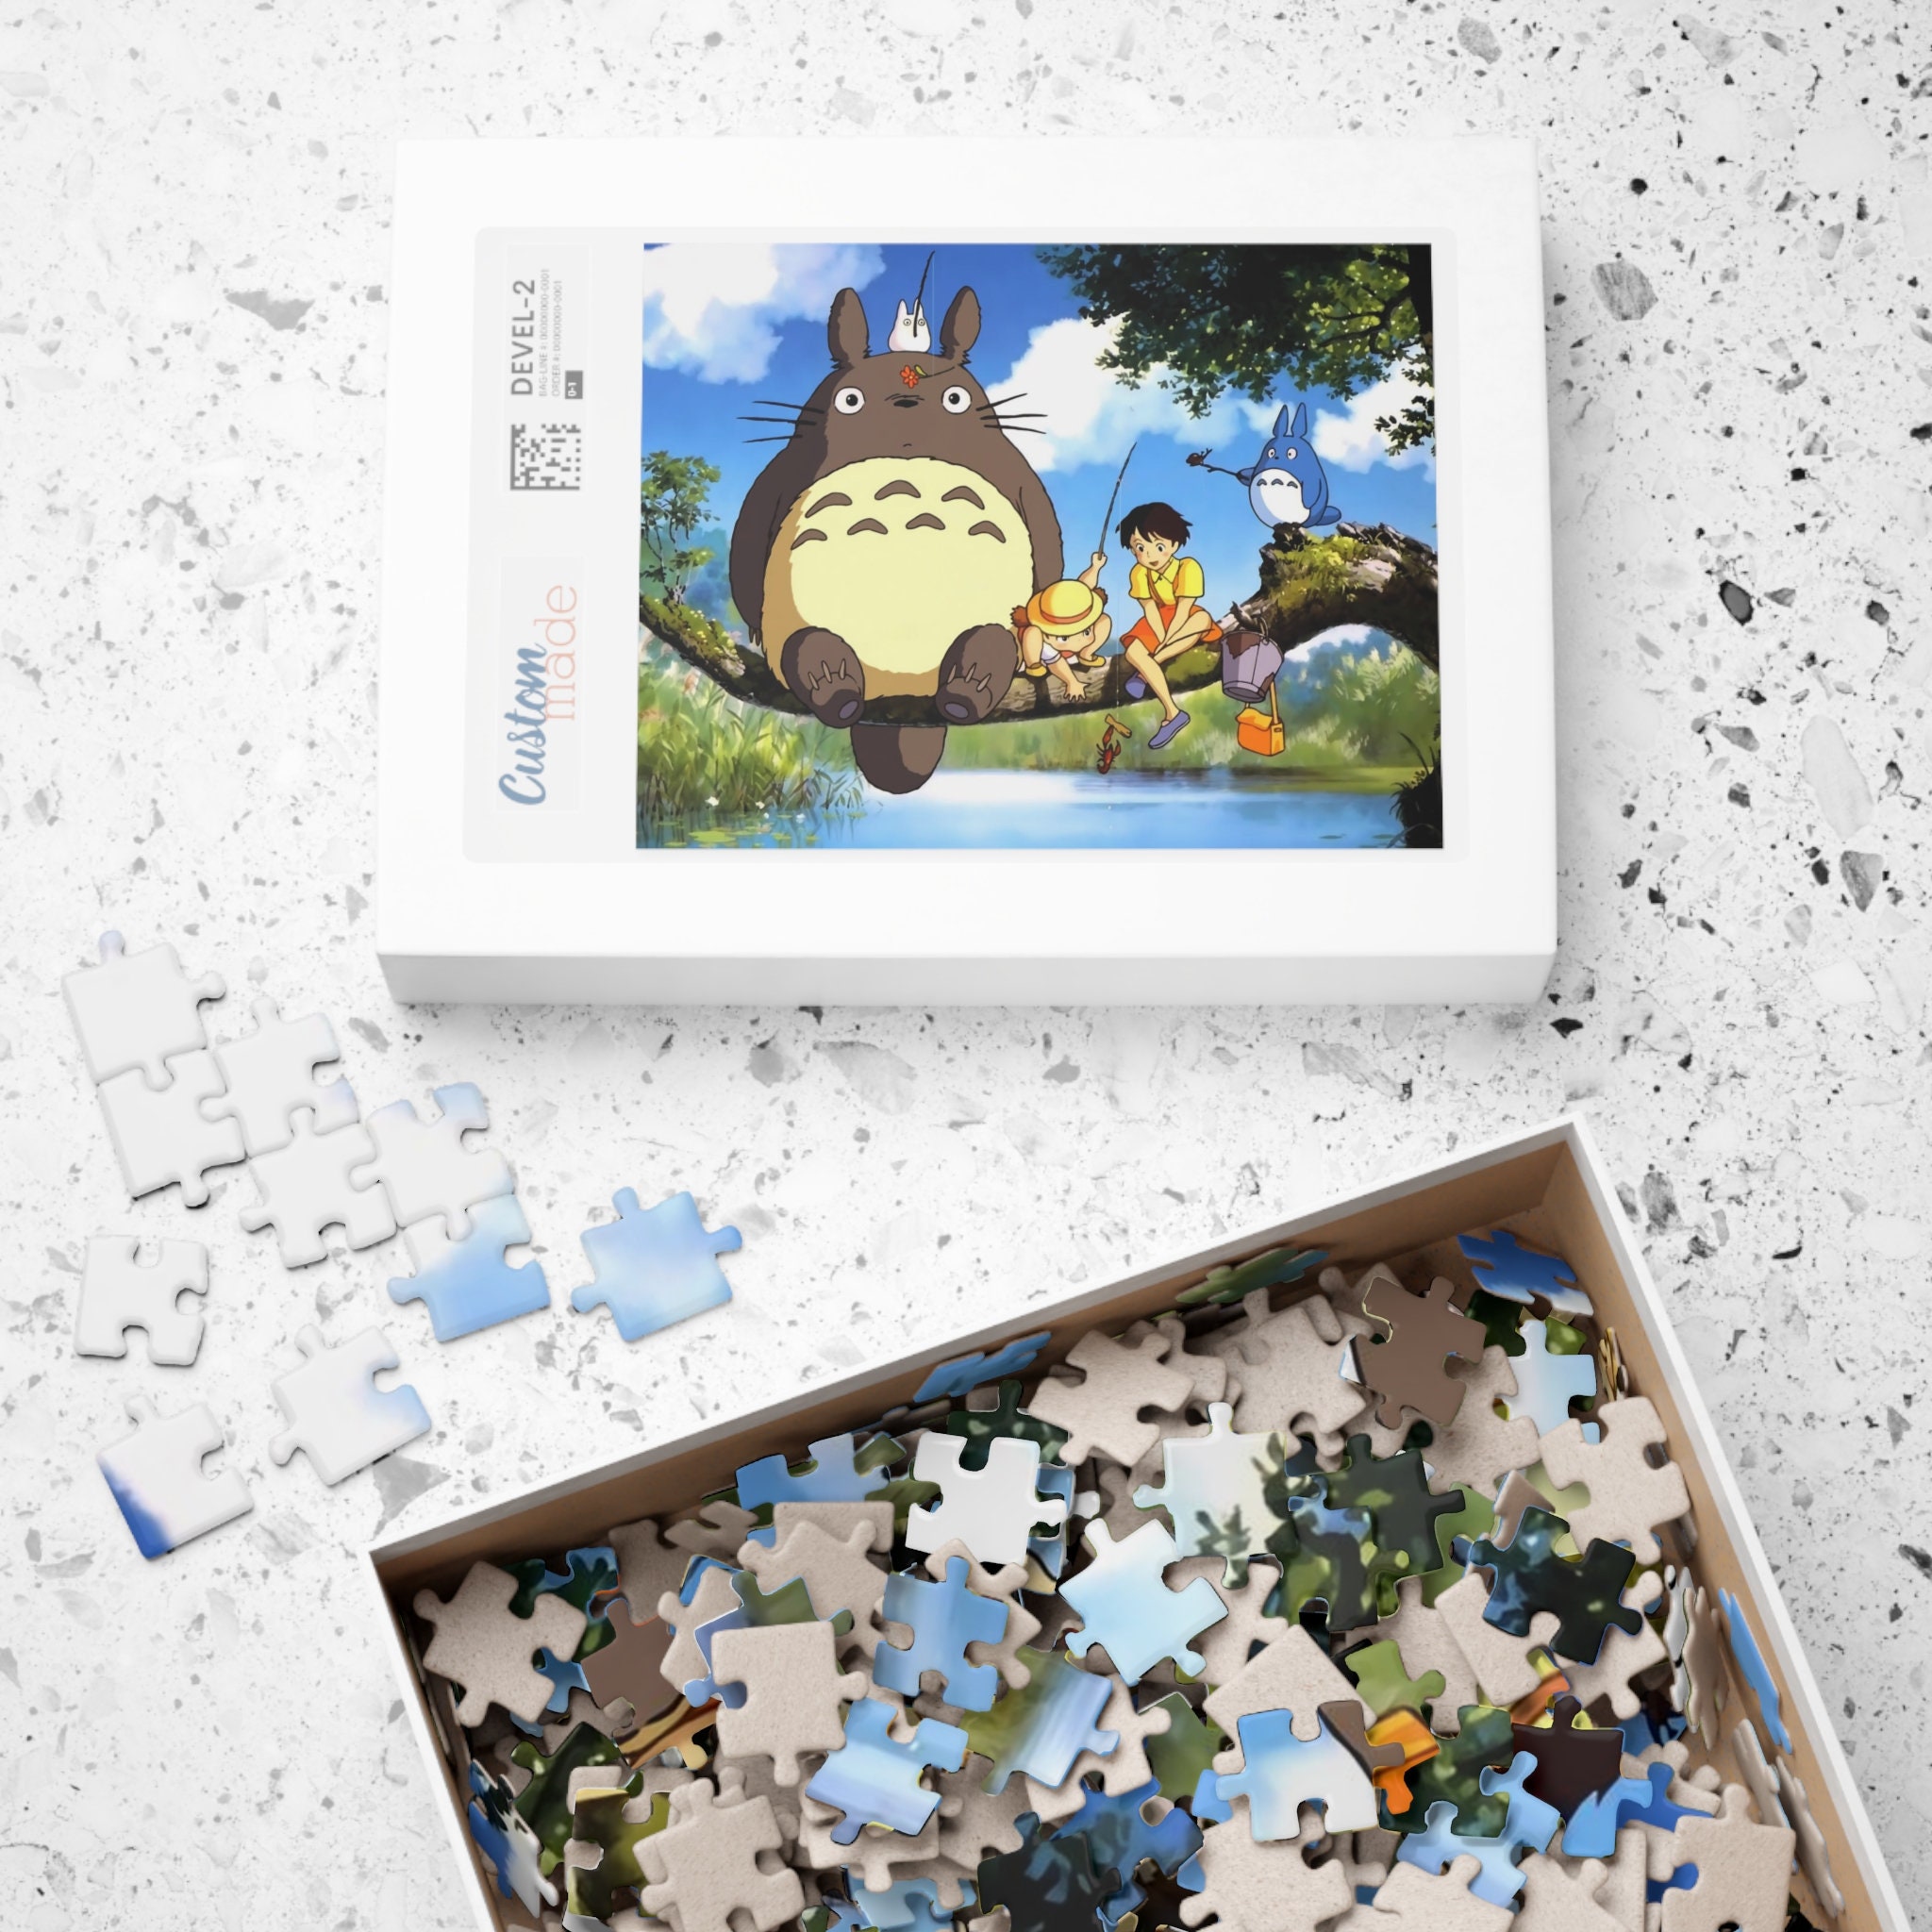 ensky 1000 Piece Jigsaw Puzzle Pokemon Starry Sky (51 x 73.5 cm)